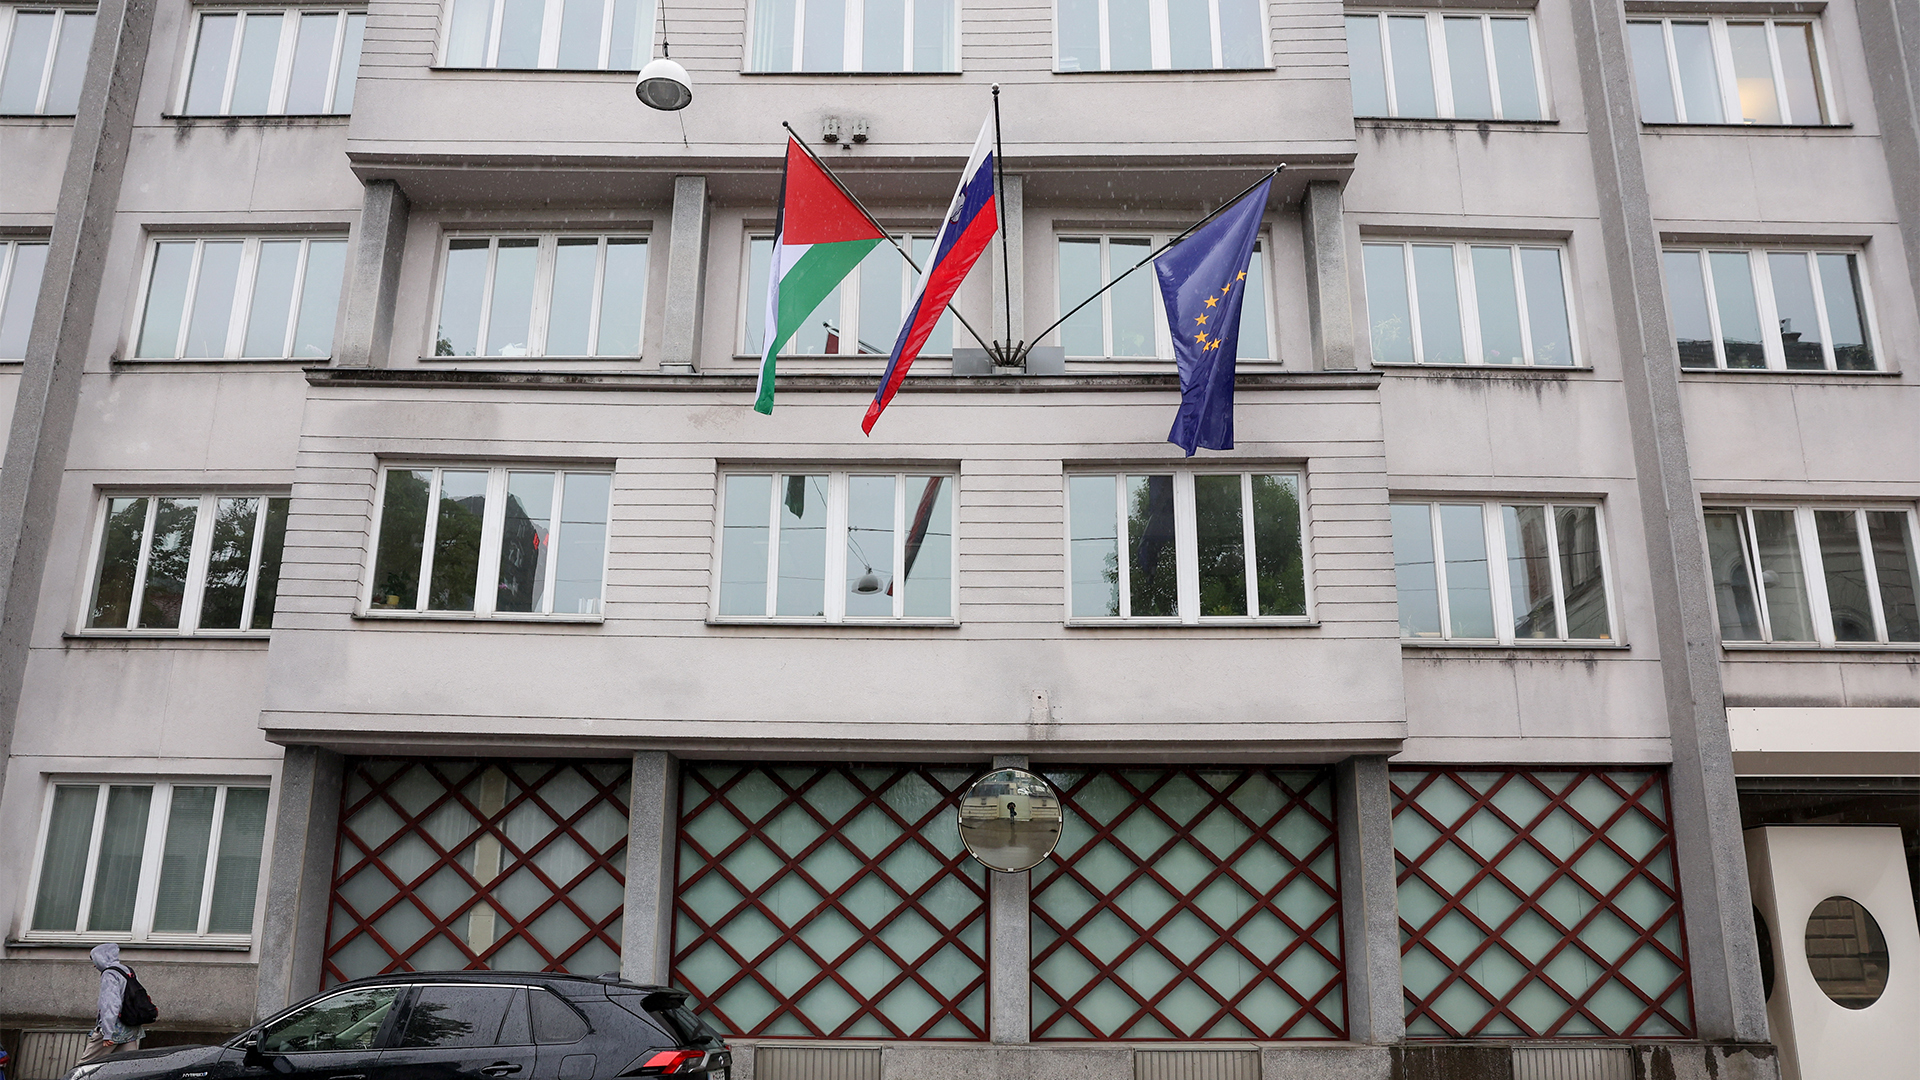 بعد 3 دول أوروبية.. سلوفينيا تعلن الاعتراف بدولة فلسطين | التقارير الإخبارية – البوكس نيوز